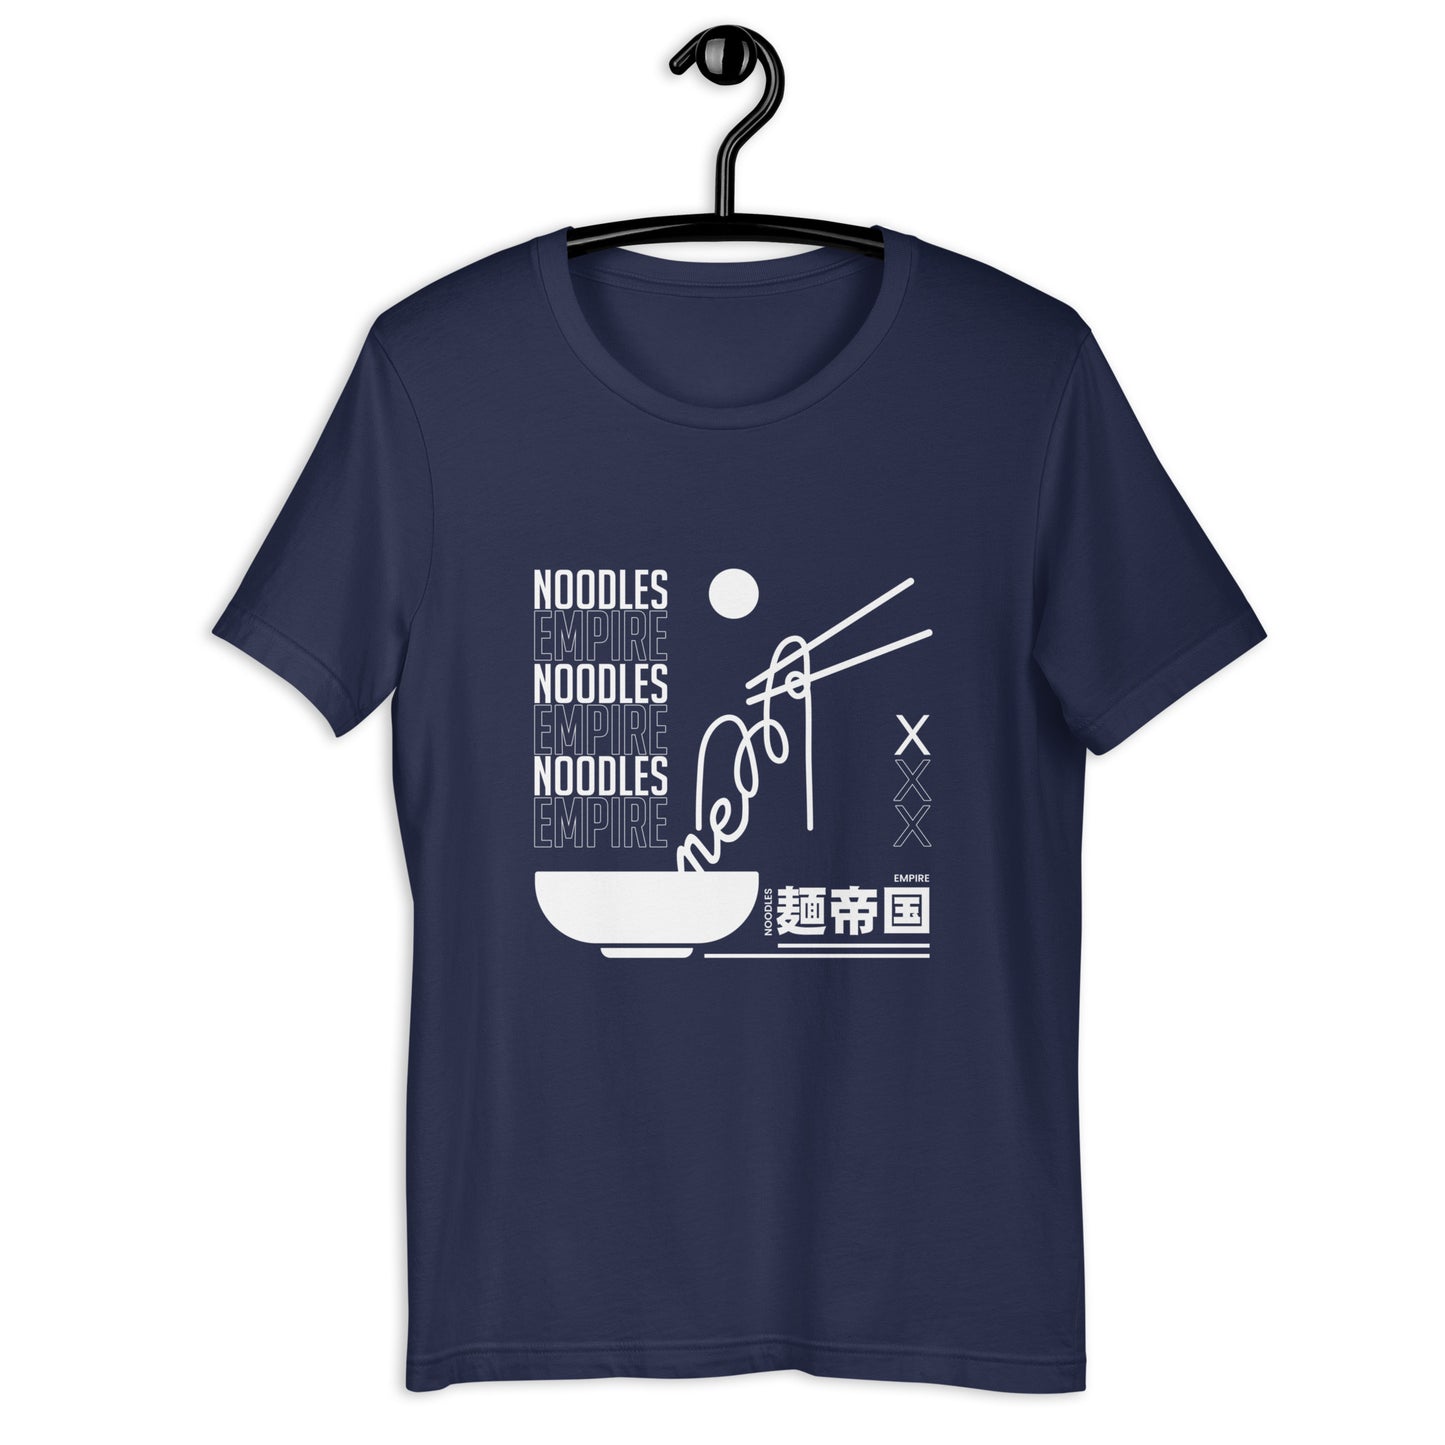 Noodle Empire T-Shirt: Urban